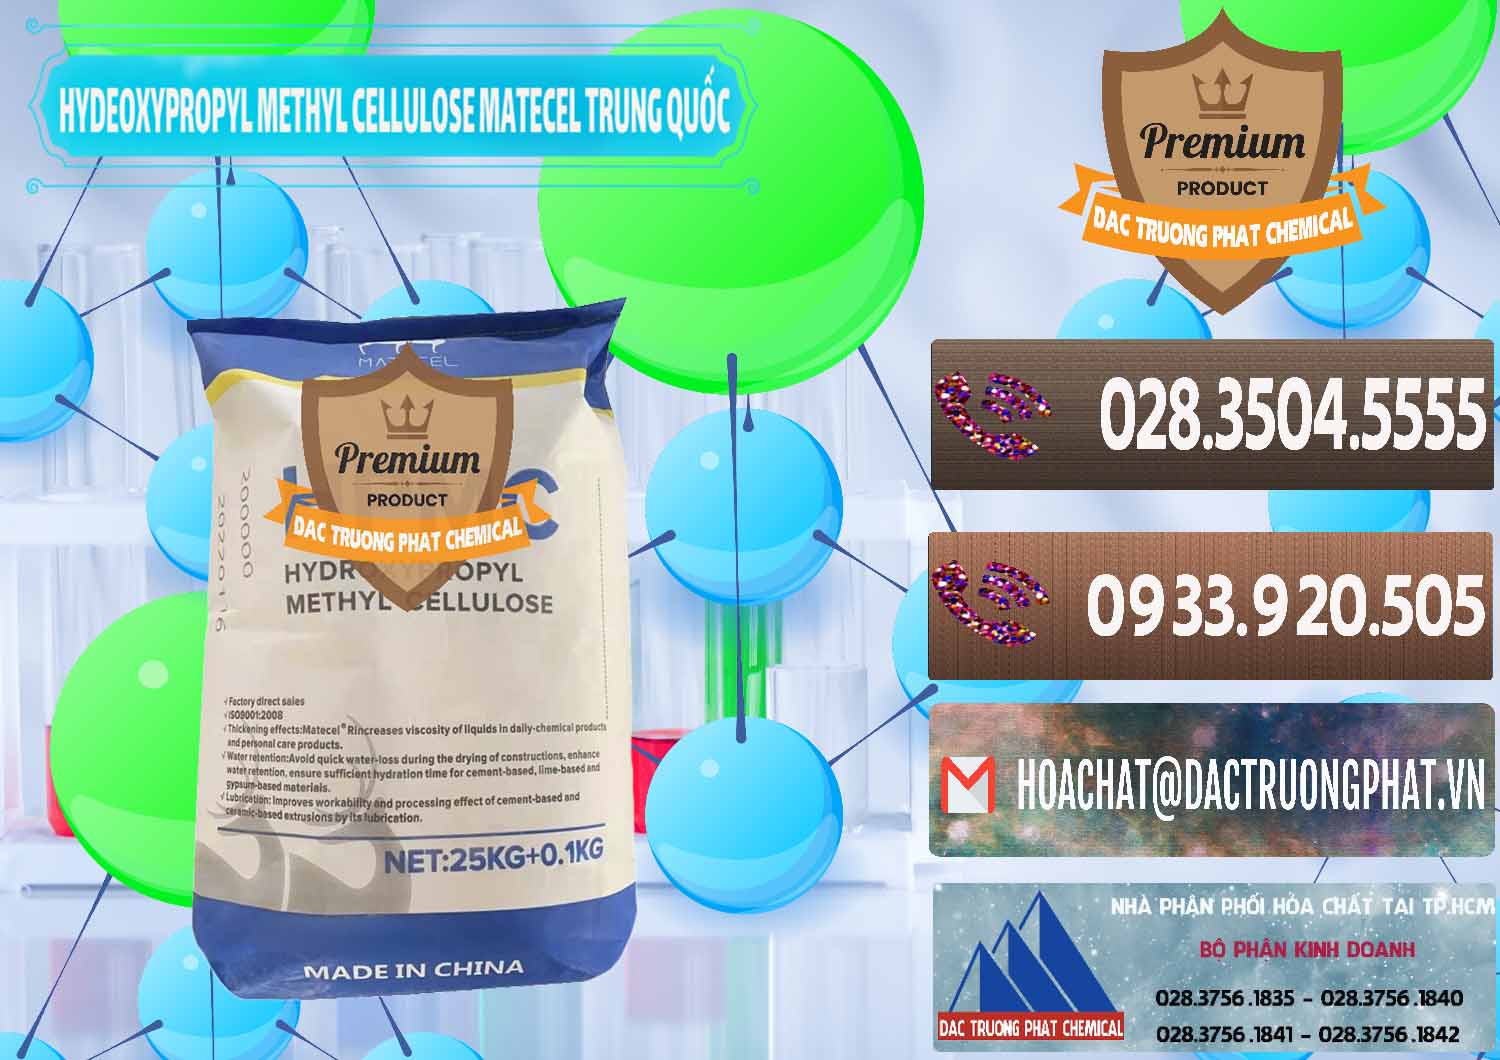 Nơi phân phối và bán Chất Tạo Đặc HPMC - Hydroxypropyl Methyl Cellulose Matecel Trung Quốc China - 0396 - Đơn vị kinh doanh & phân phối hóa chất tại TP.HCM - hoachatviet.net